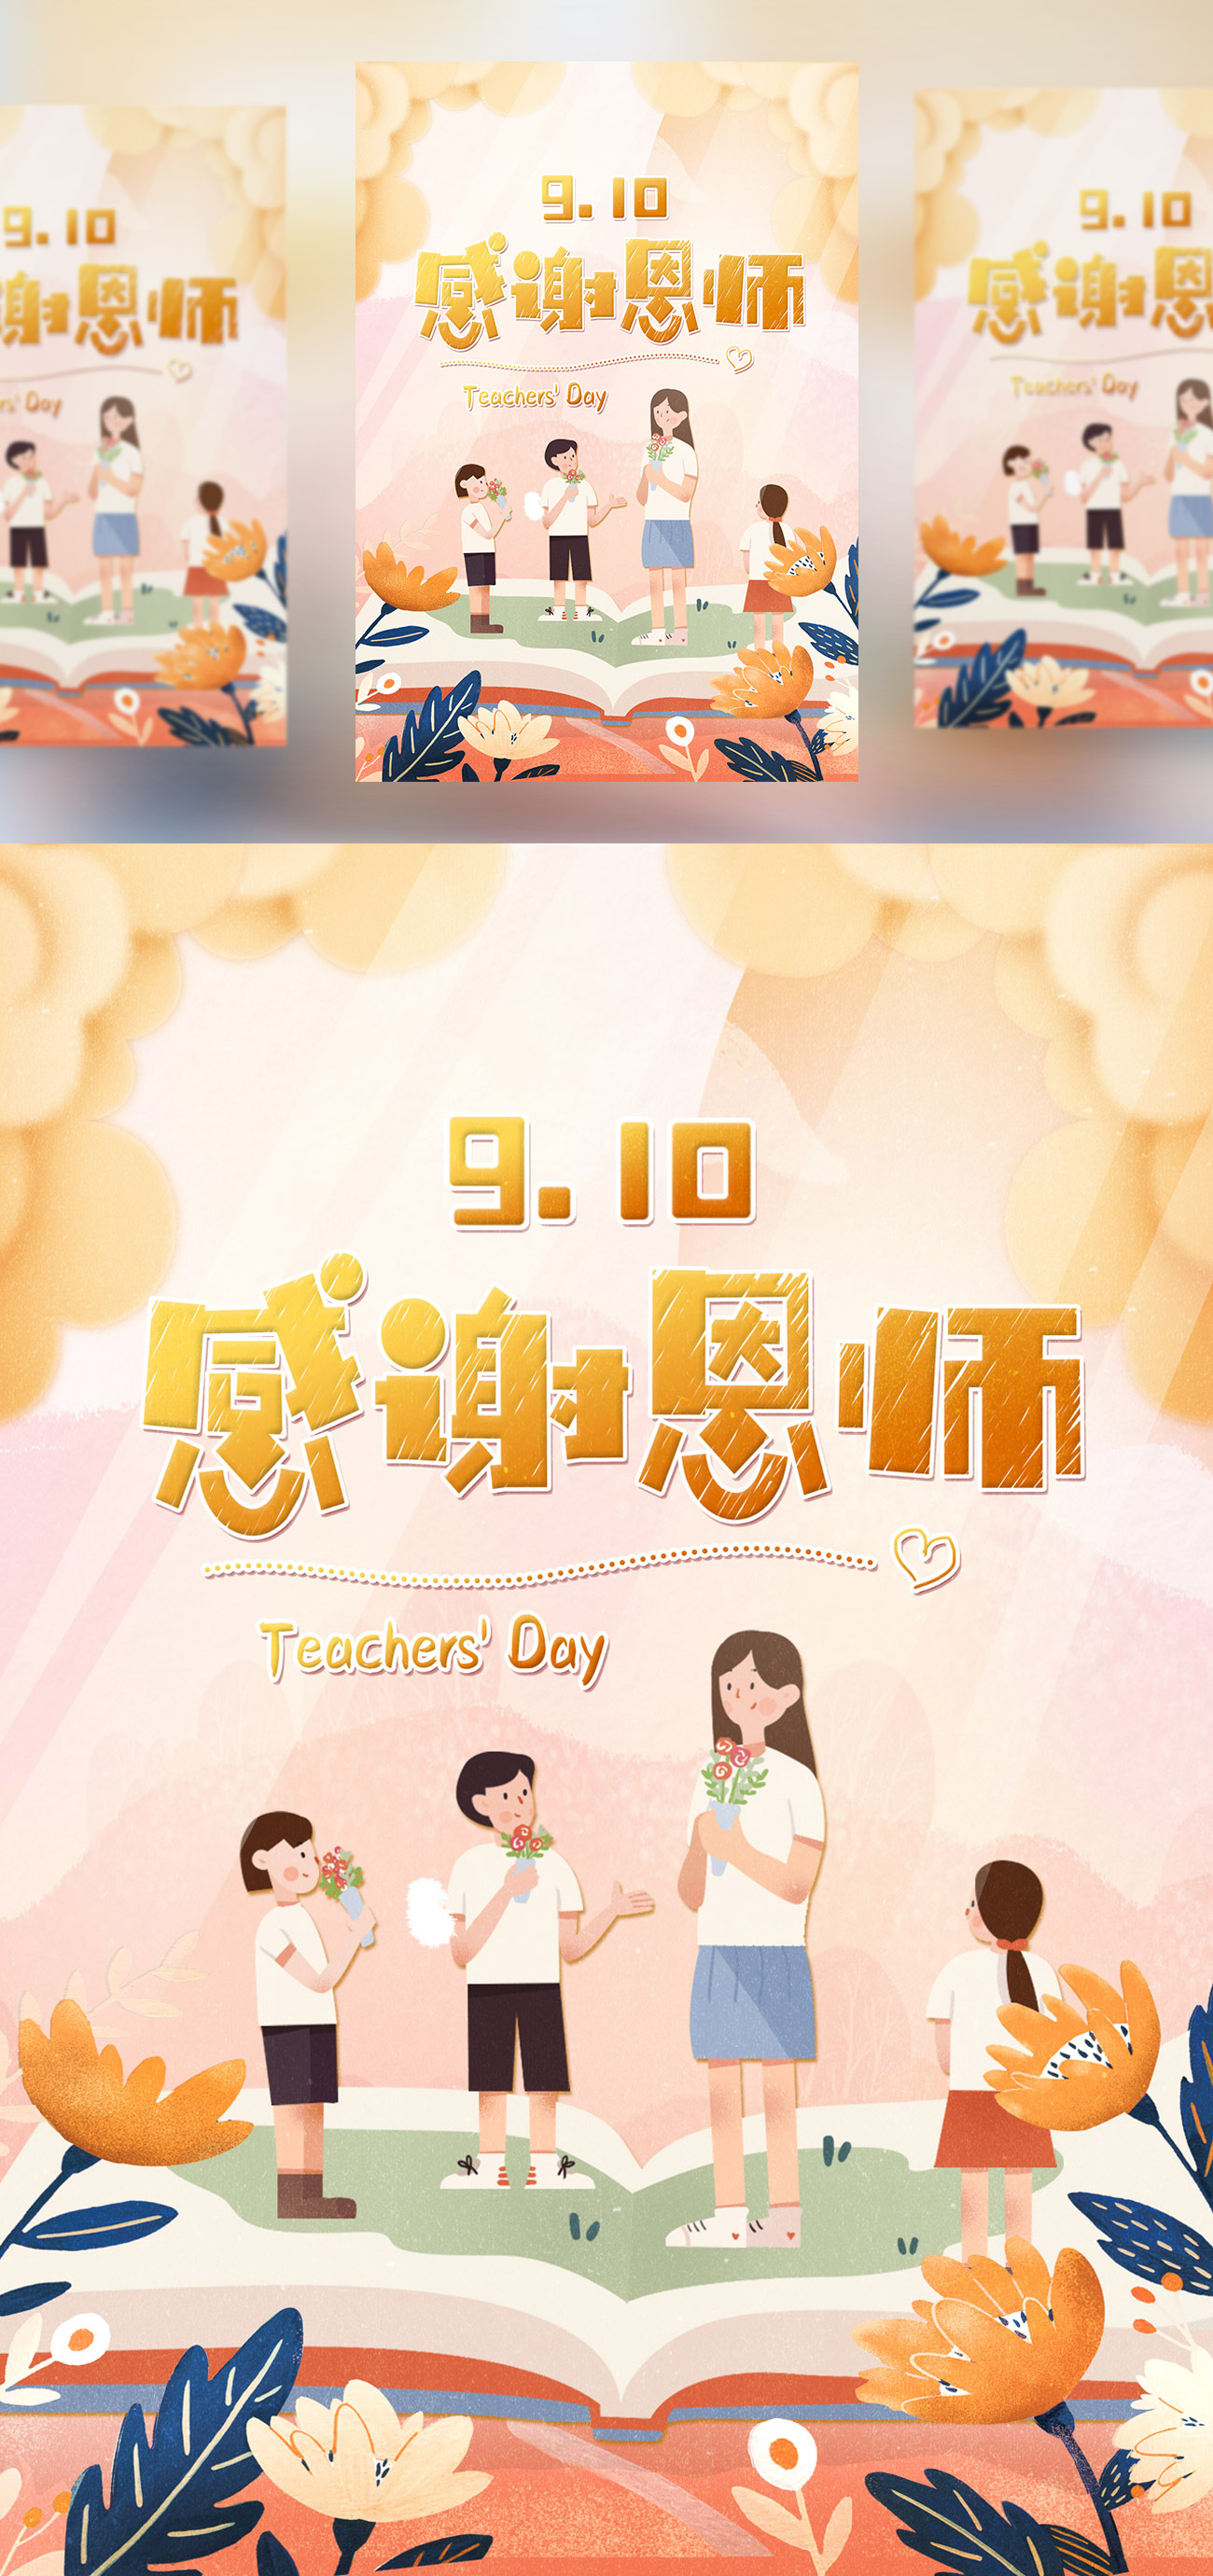 【感谢师恩】教师节海报模板/活动展板/宣传单PSD模版素材